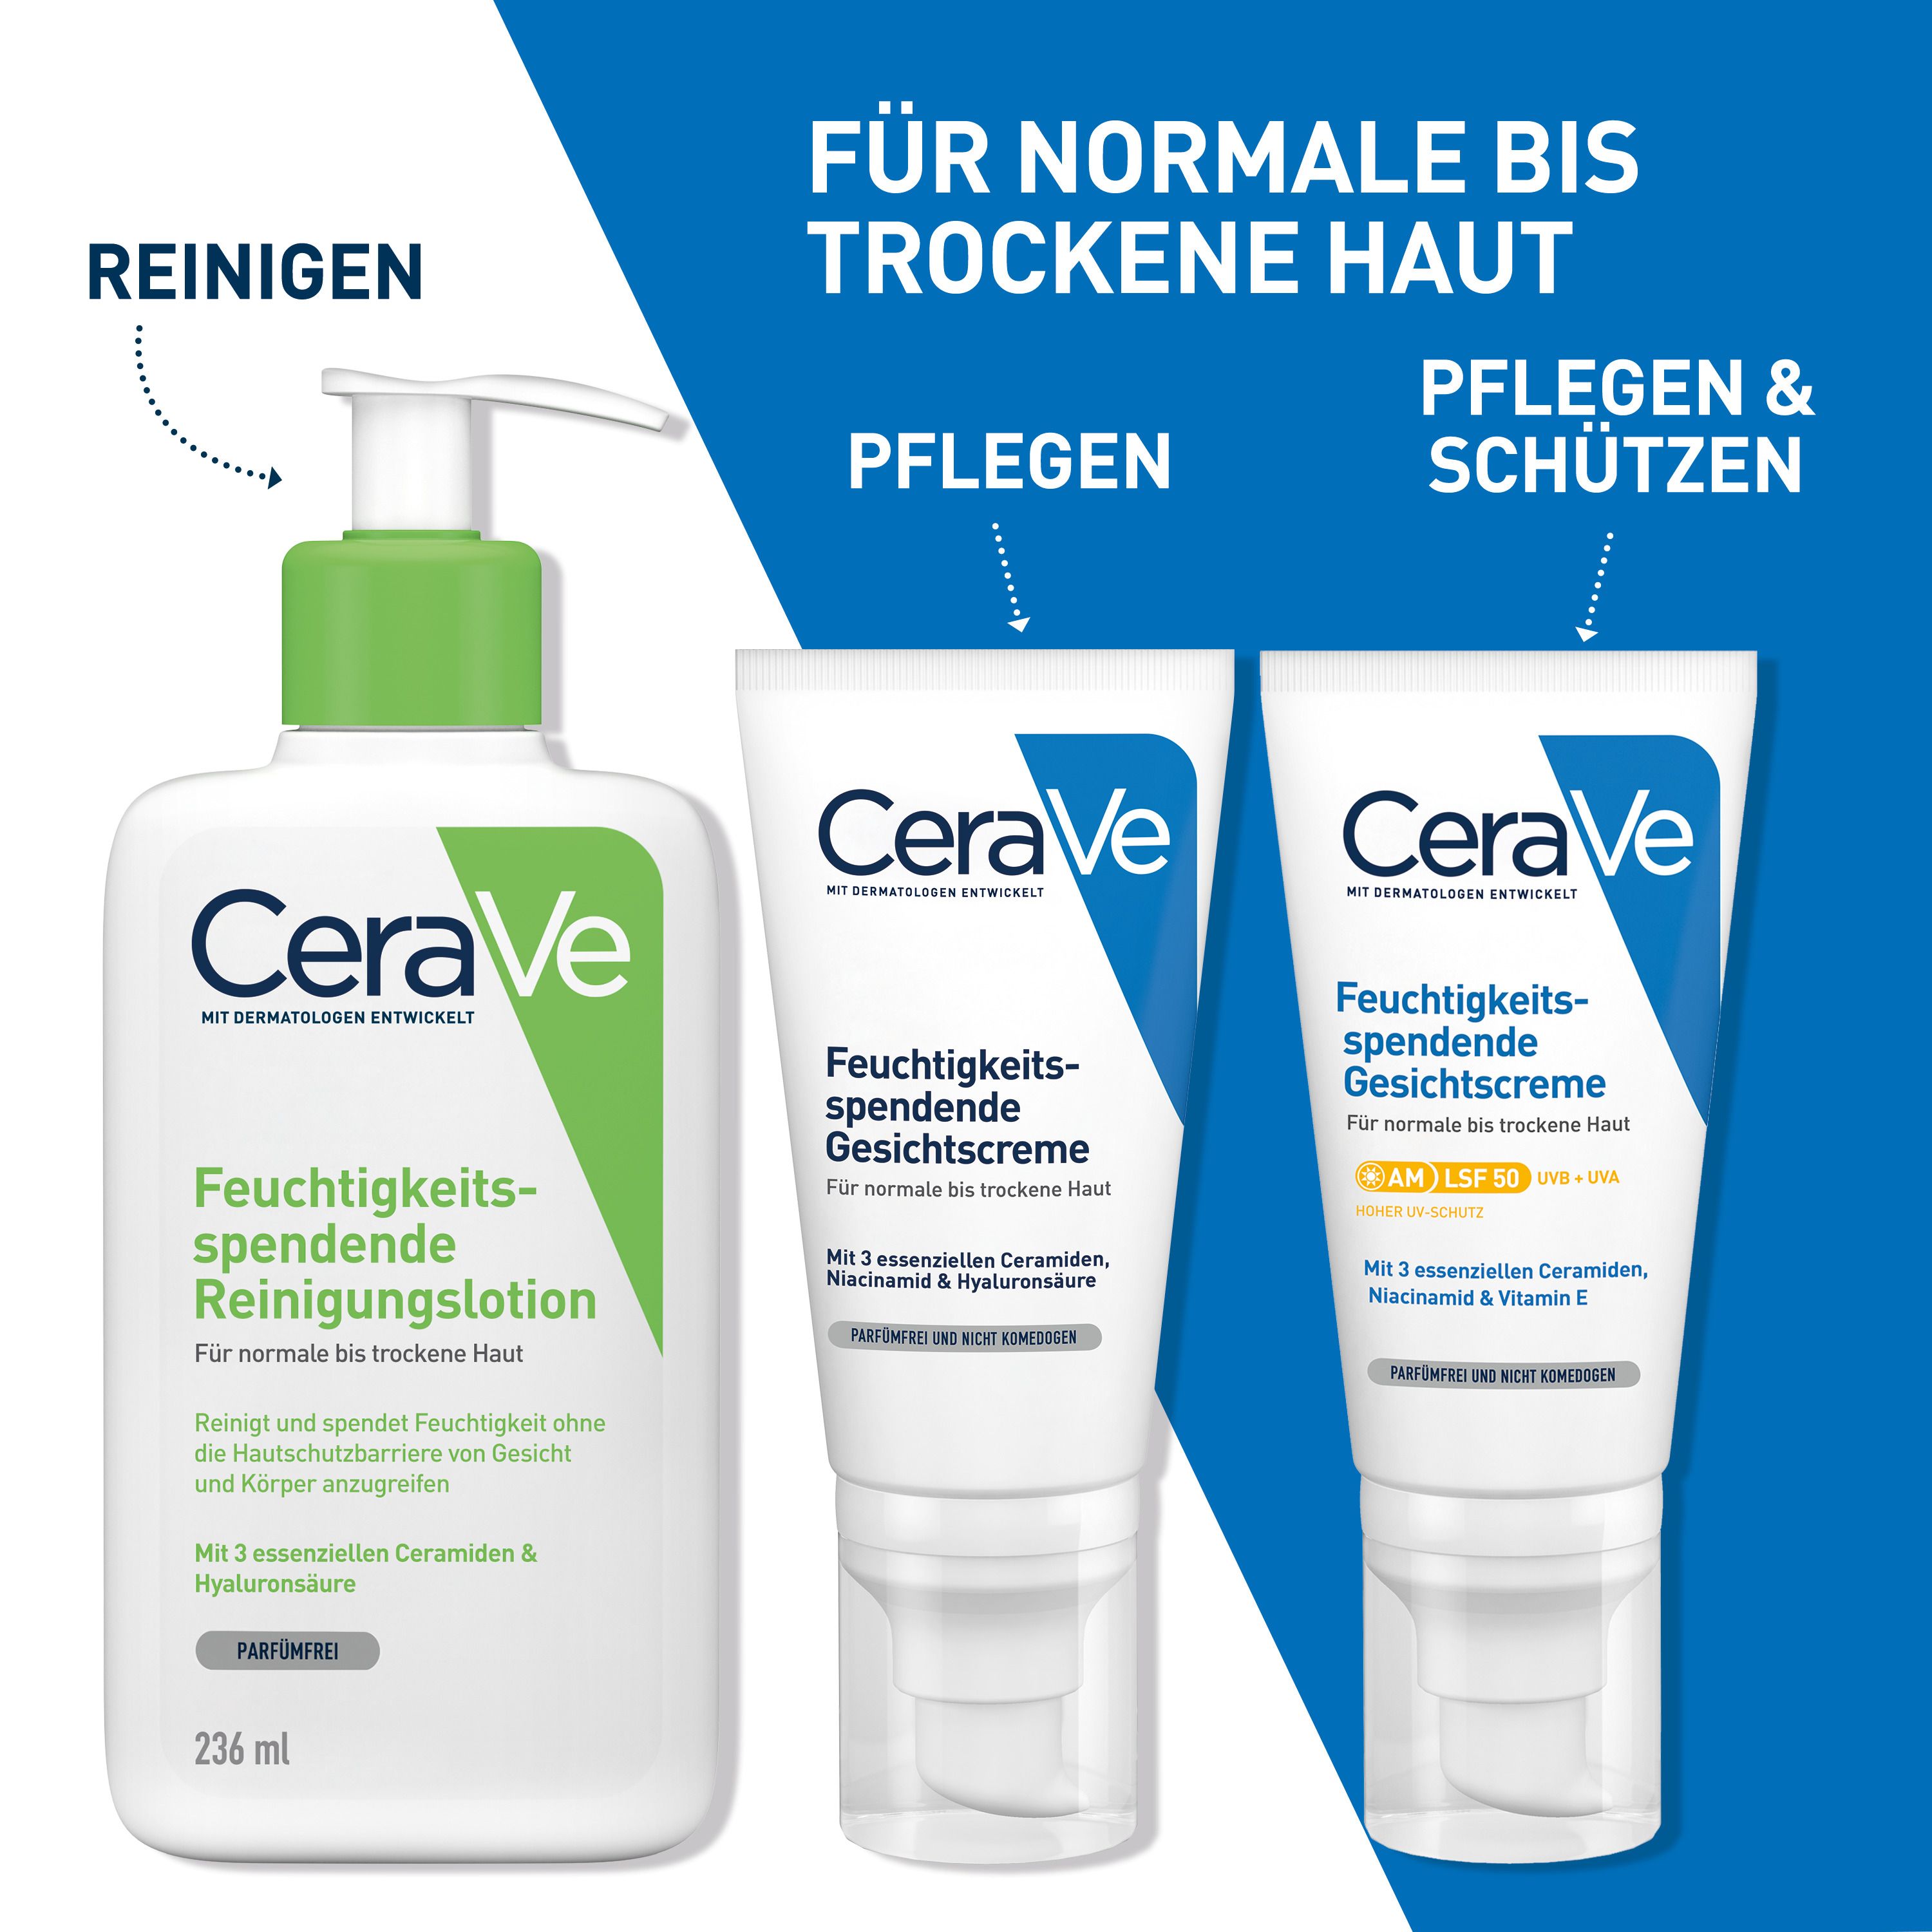 CeraVe Feuchtigkeitsspendende Gesichtscreme: hydratisierende Gesichtspflege mit Hyaluron, Niacinamid und Ceramiden für normale bis trockene Haut